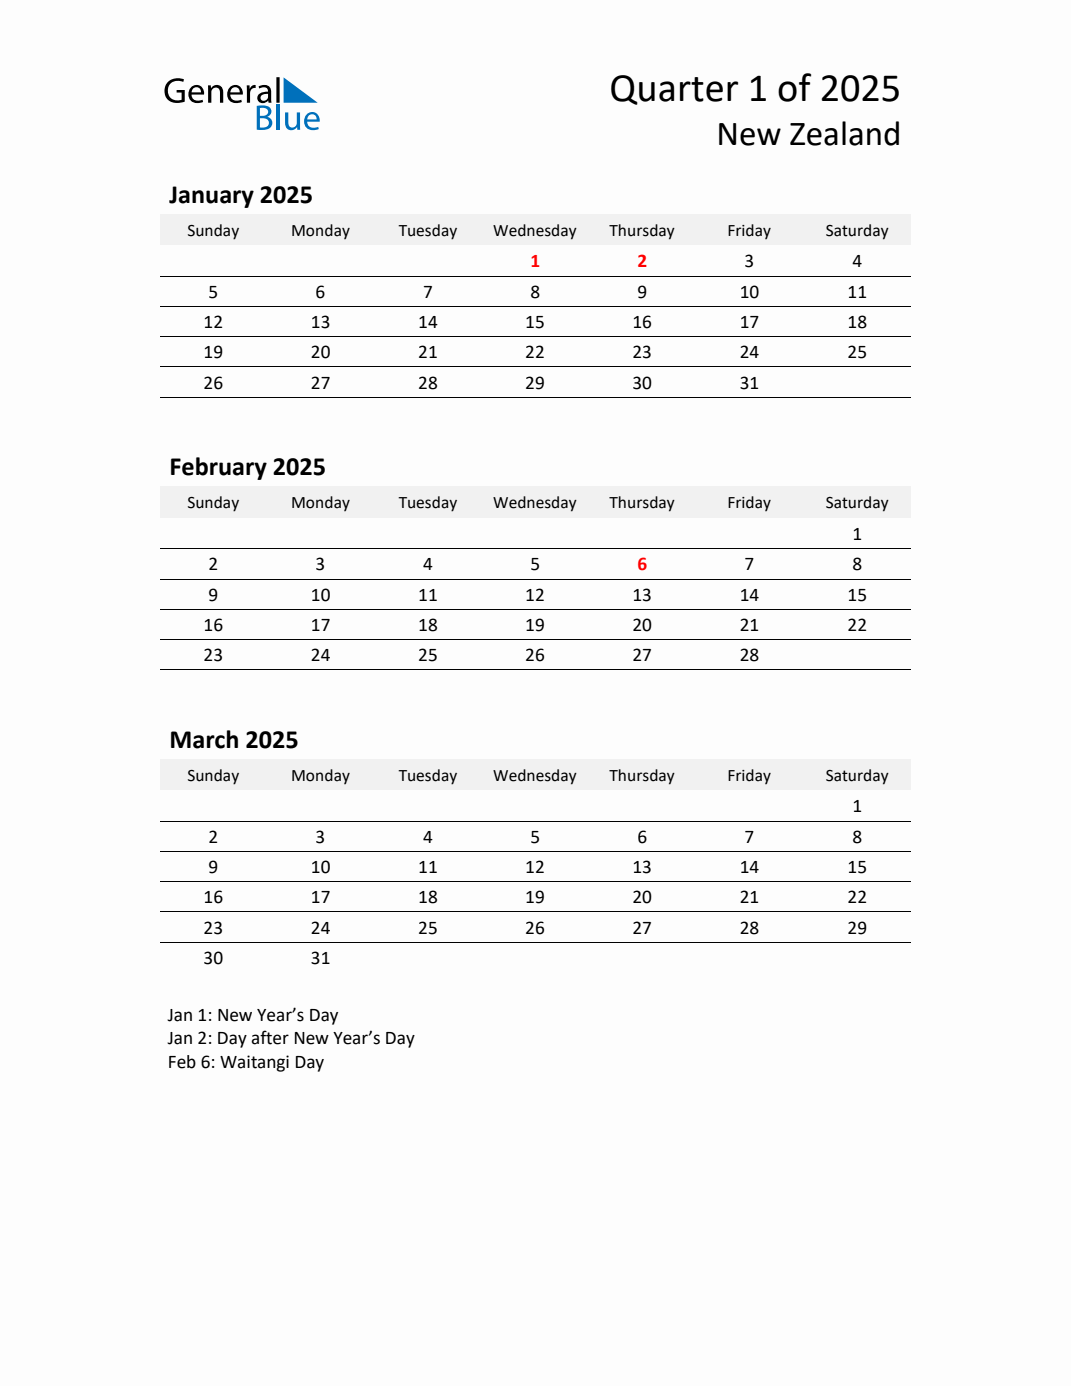 Q1 2025 Quarterly Calendar With New Zealand Holidays